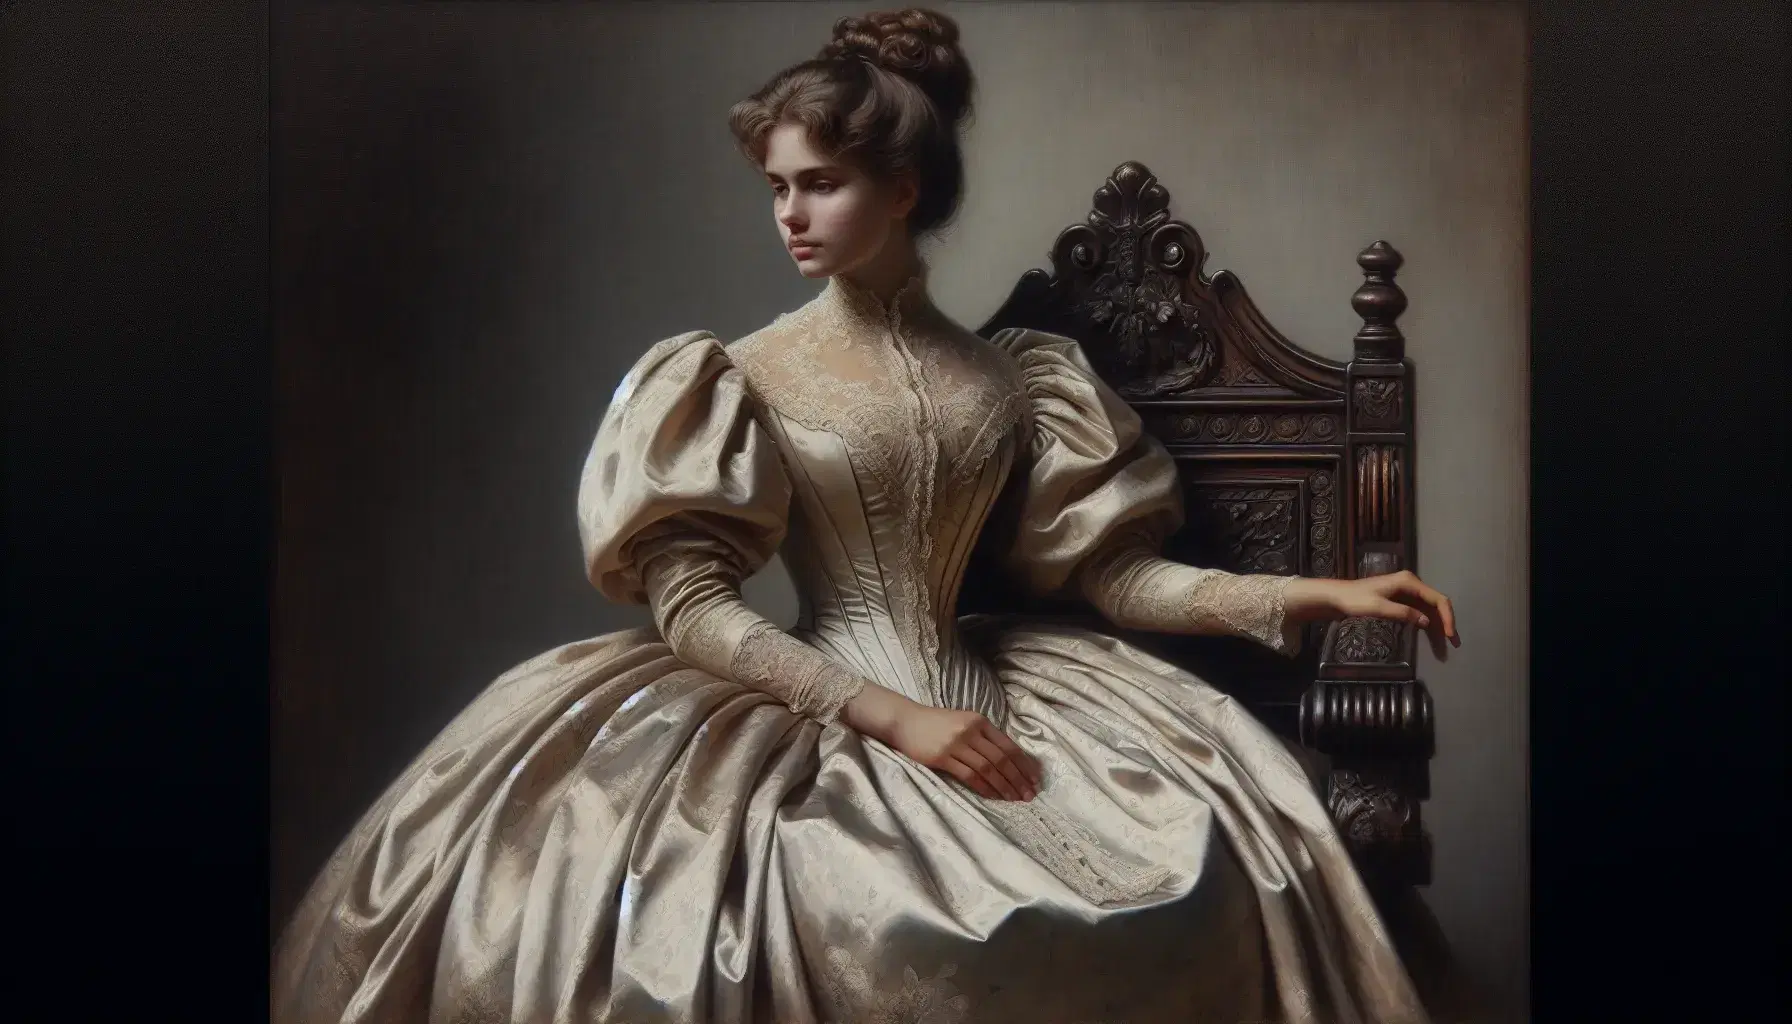 Retrato al óleo de mujer del siglo XIX sentada en silla tallada, con vestido de seda y abanico, expresión serena y peinado recogido.